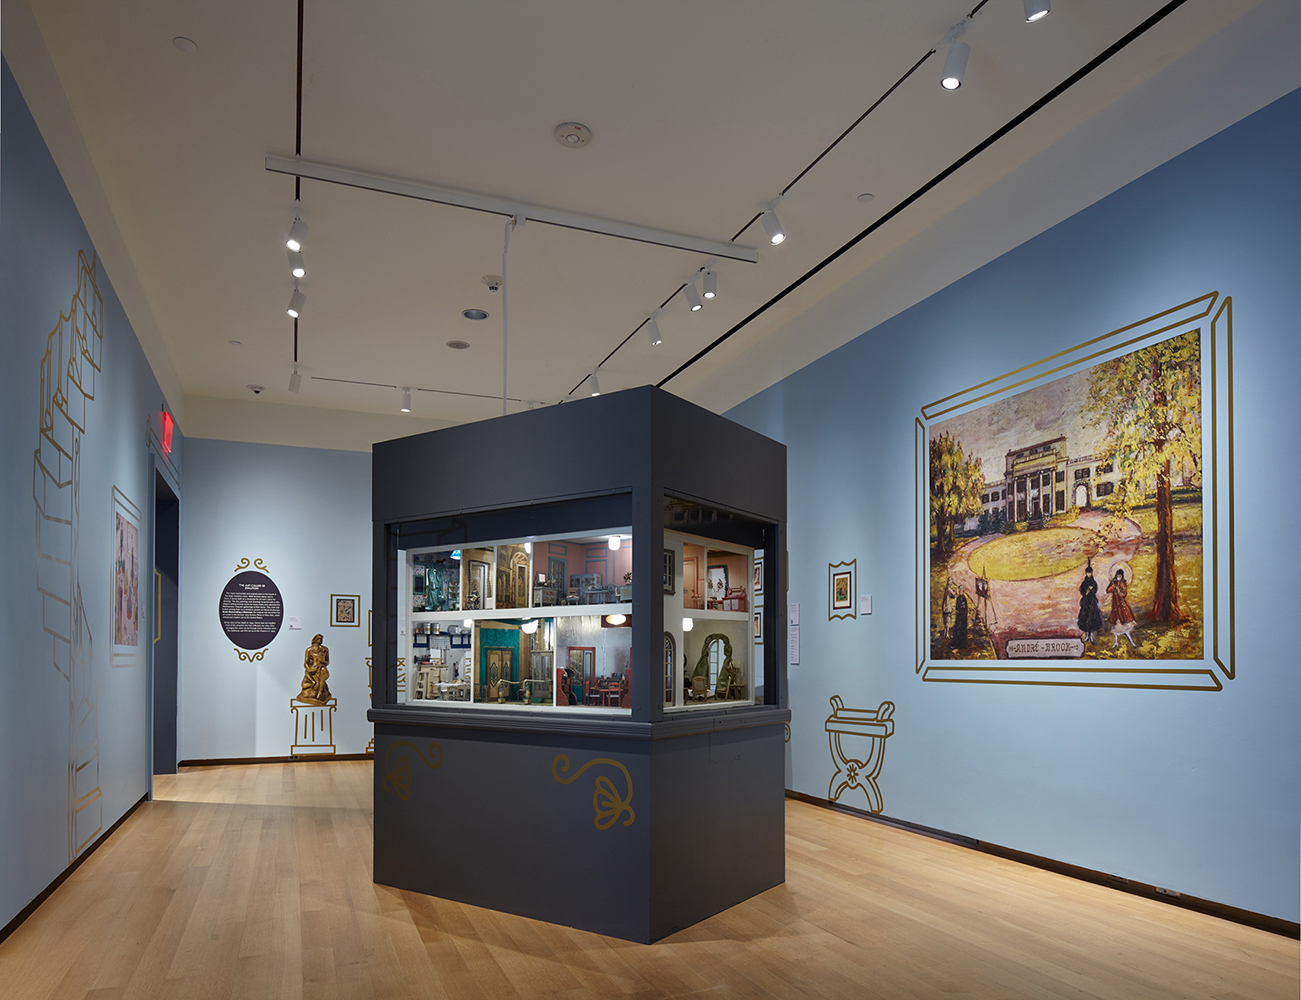 ニューヨーク市立博物館でのステットハイマードールハウス展の画像